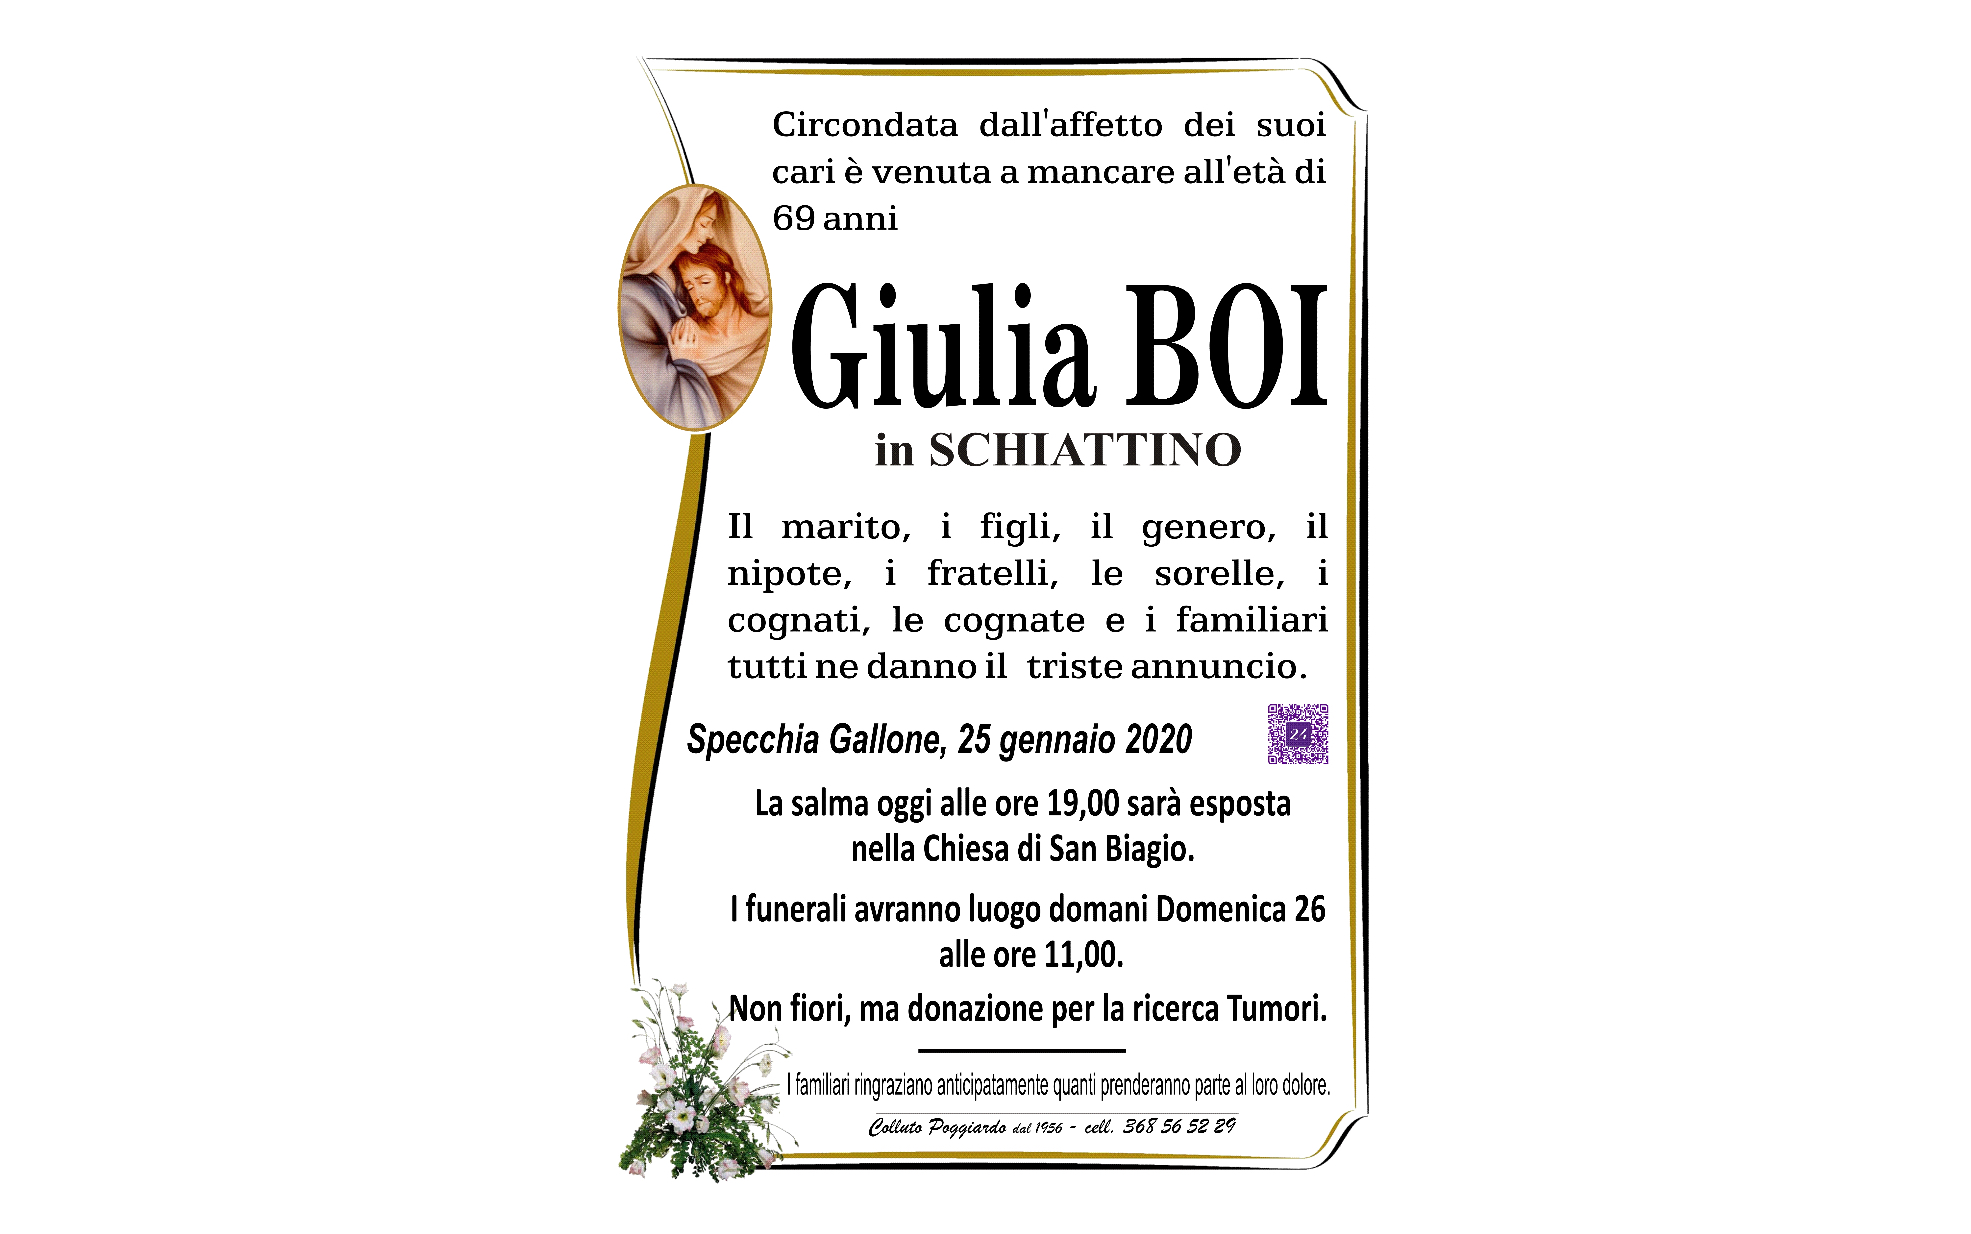 Giulia Boi